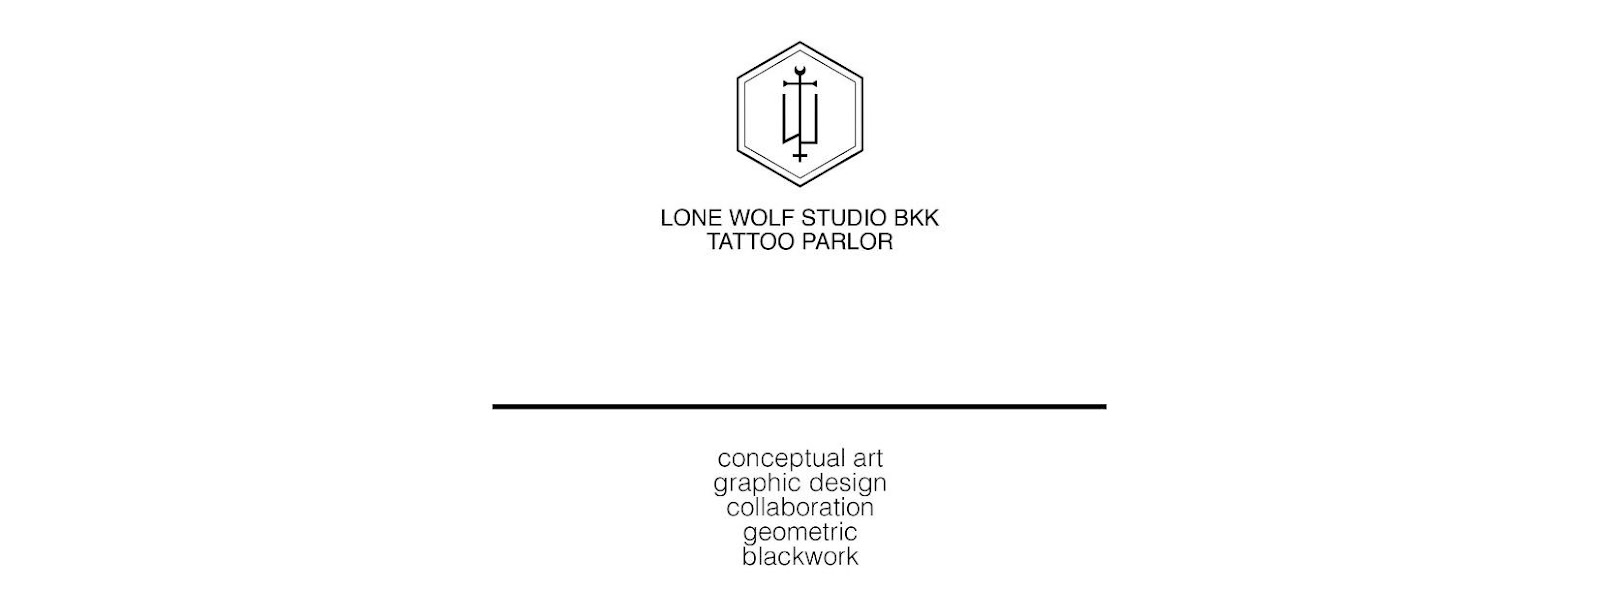 อาจเป็นรูปภาพของ ข้อความพูดว่า "นู้ LONE WOLF STUDIO BKK TATTOO PARLOR conceptual art graphic desigr collabo collaboration geometric blackwork"